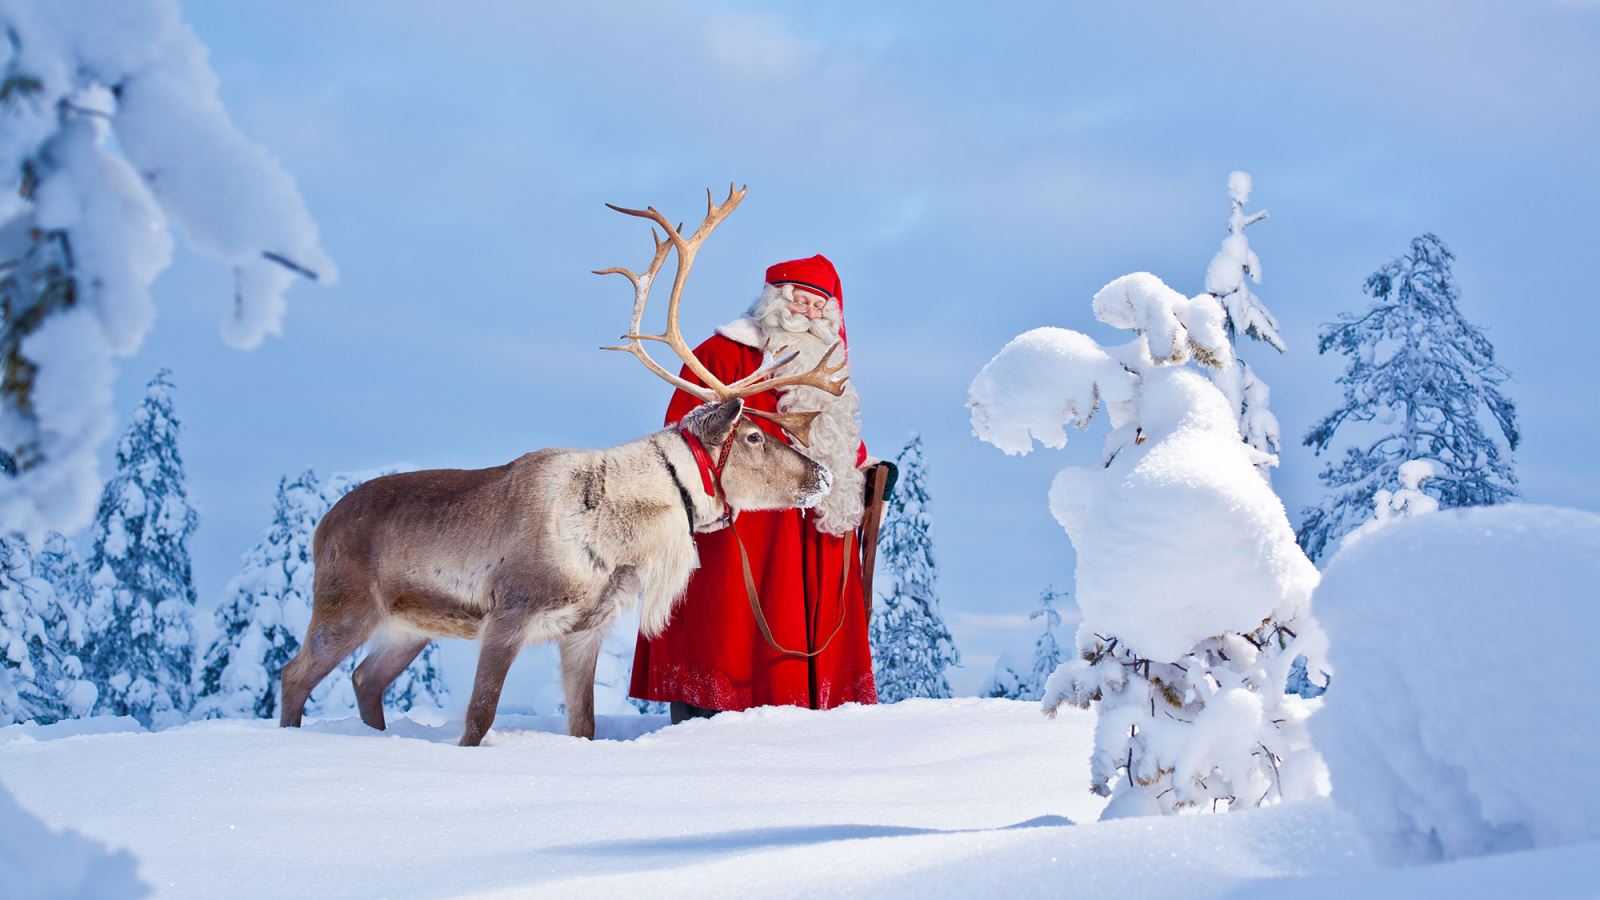 Hình tượng Ông già Noel mang đến cảm giác ấm áp, an lành khi mùa Đông tới. Ảnh: visitrovaniemi